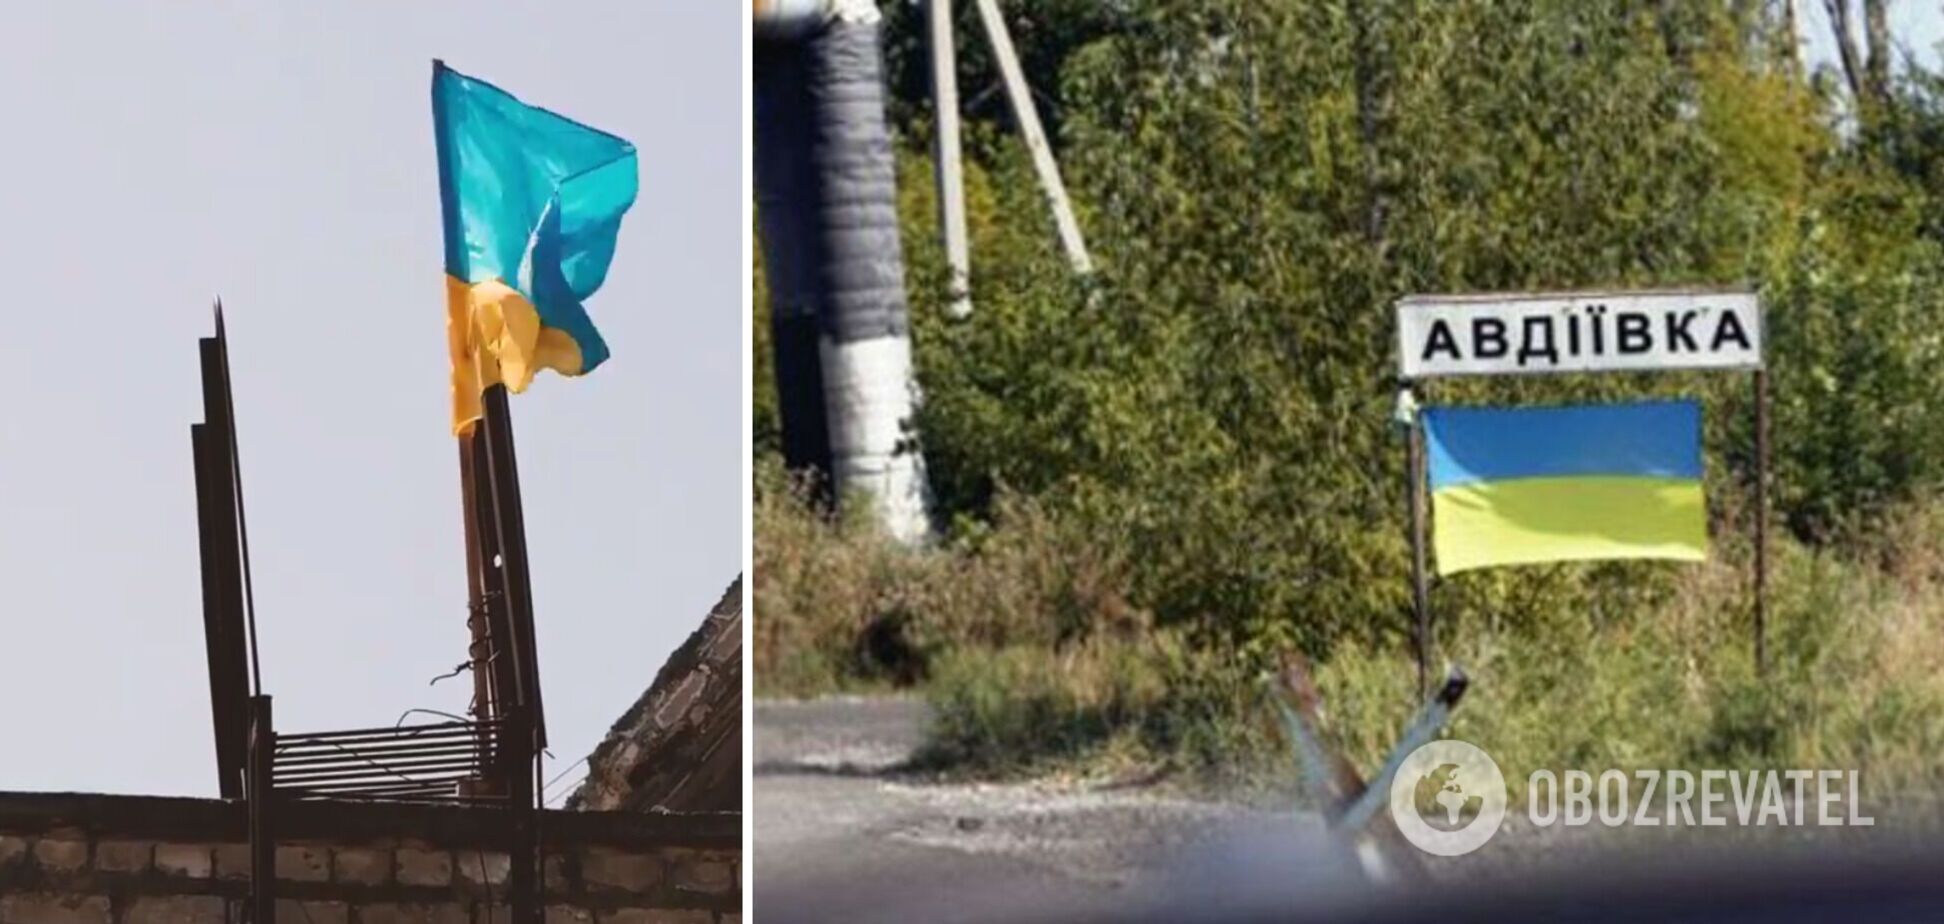 Авдіївка – це Україна! Захисники встановили український прапор на багатоповерхівці біля 'нуля'